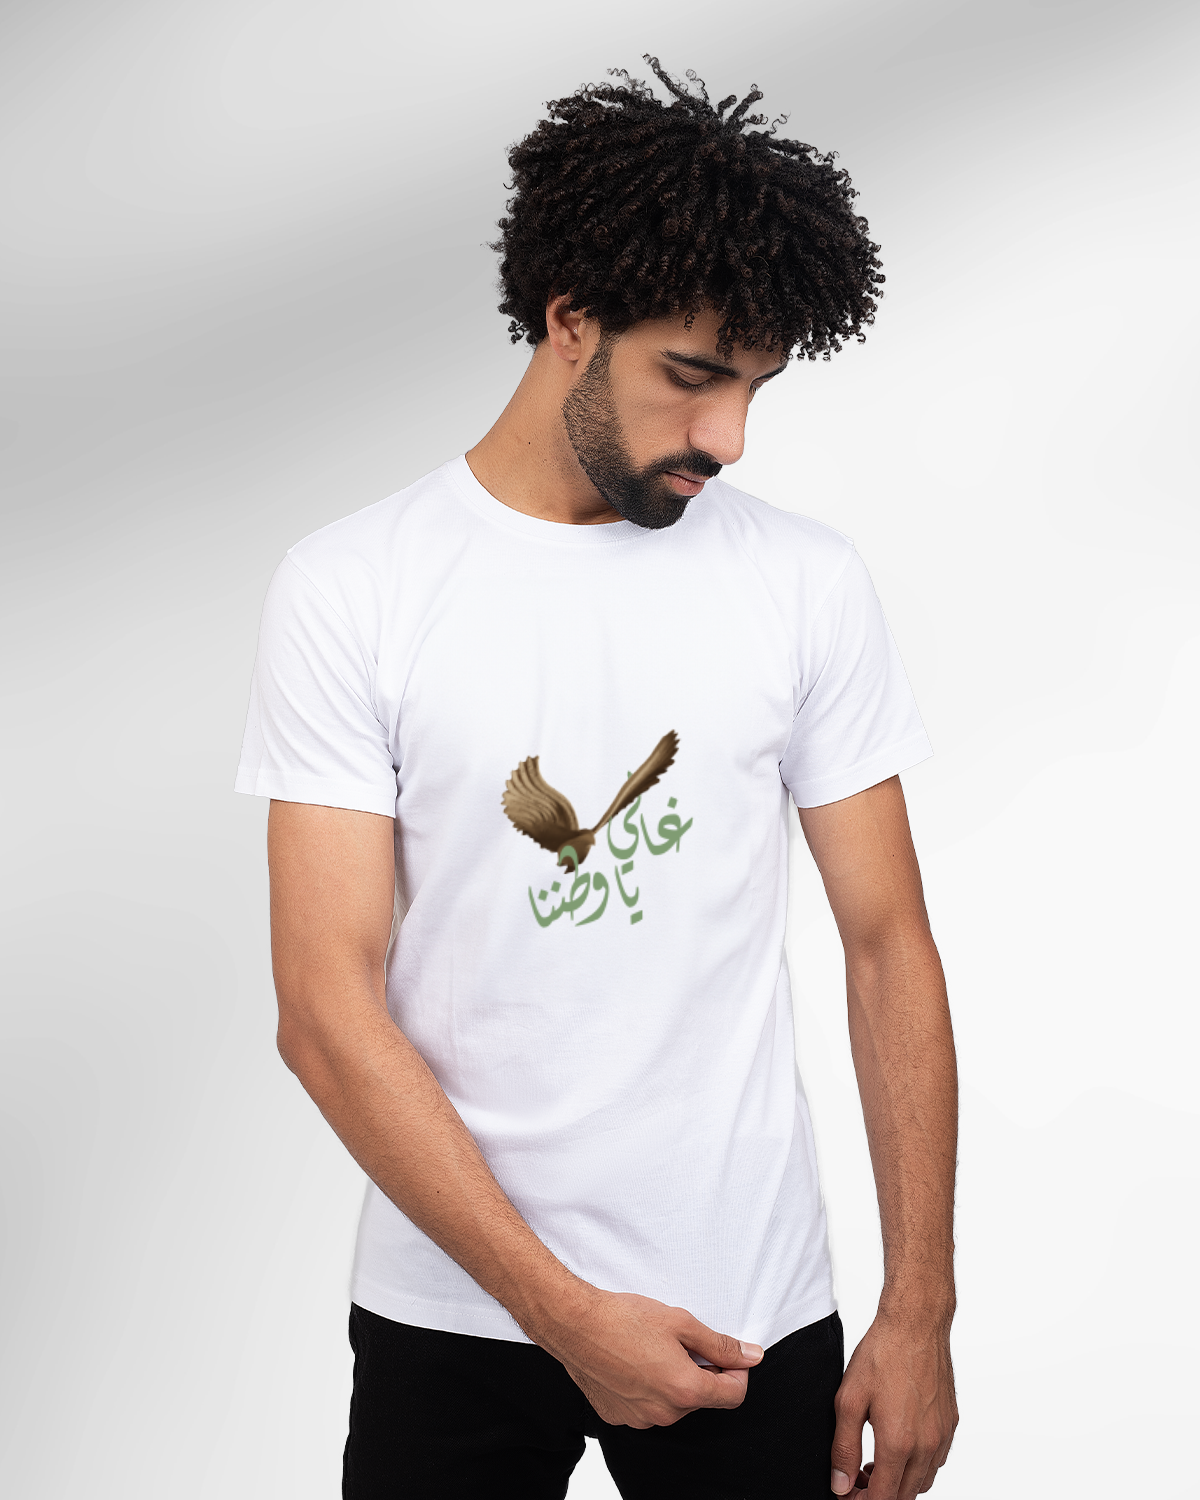 Men's Foundation Day T-shirt (Ghali ya Watanana)